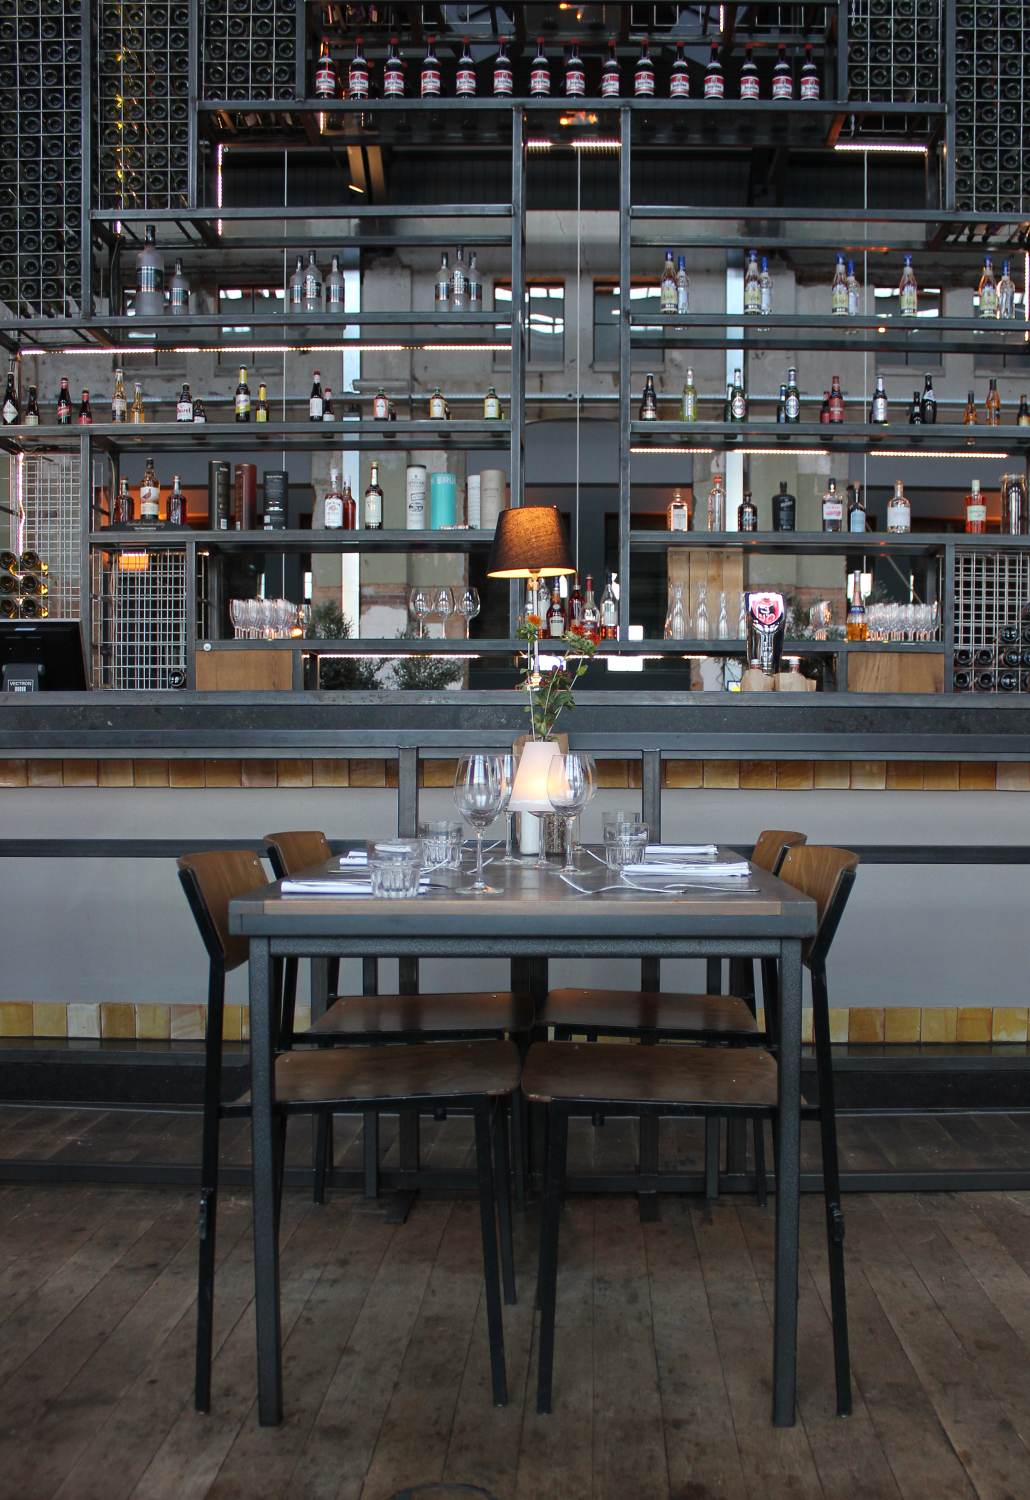 Grand Café Khotinsky Energiehuis Dordrecht centum hotspot industrieel high tea review